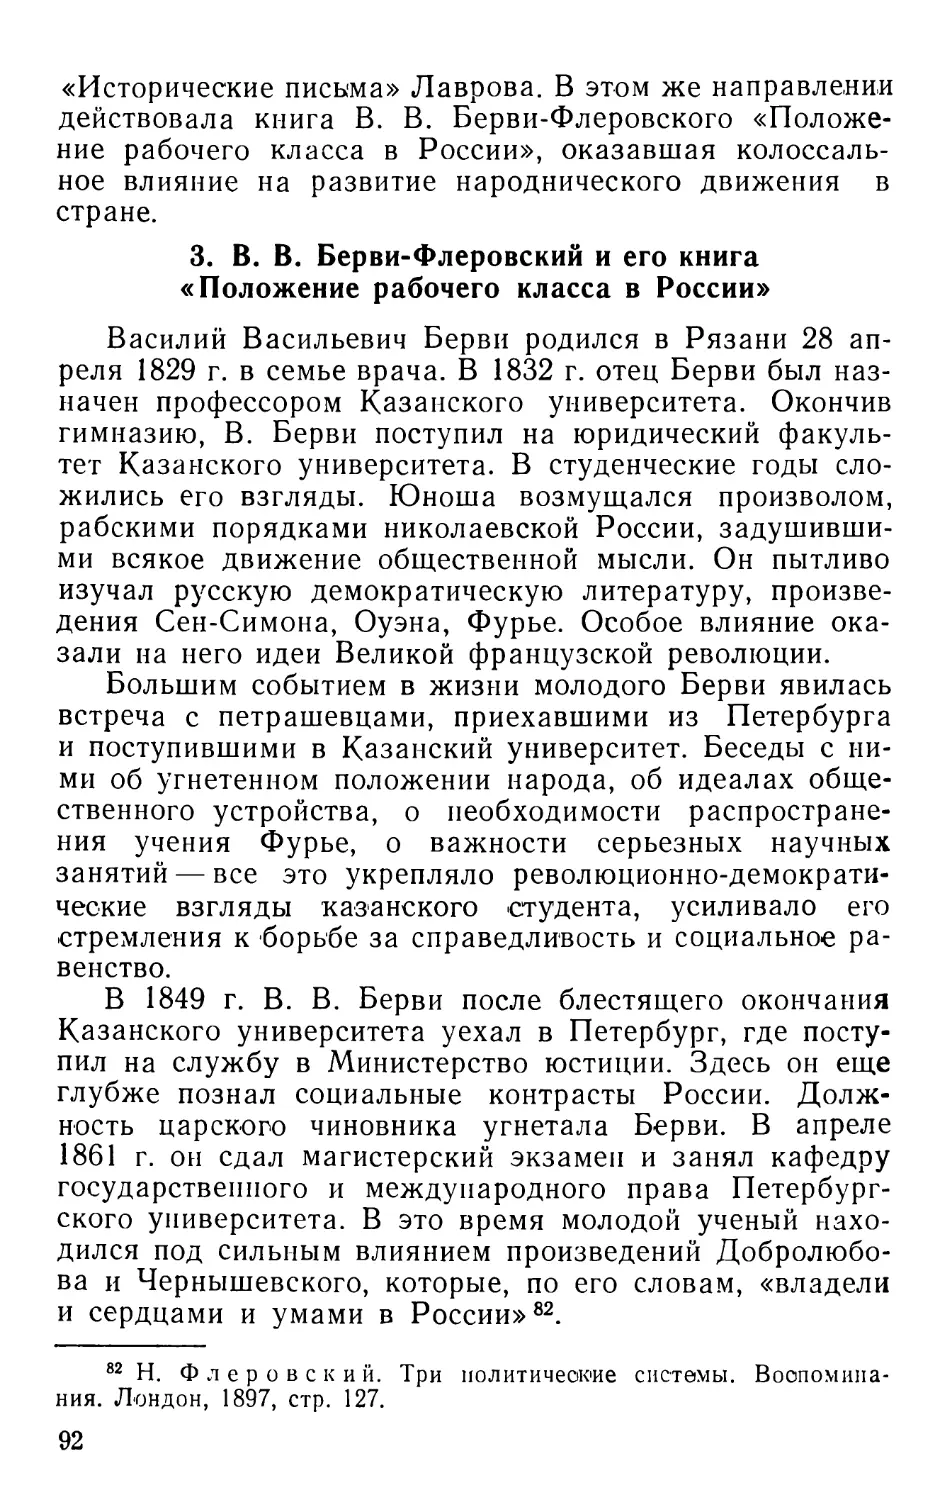 3. В. В. Берви-Флеровский и его книга «Положение рабочего класса в России»